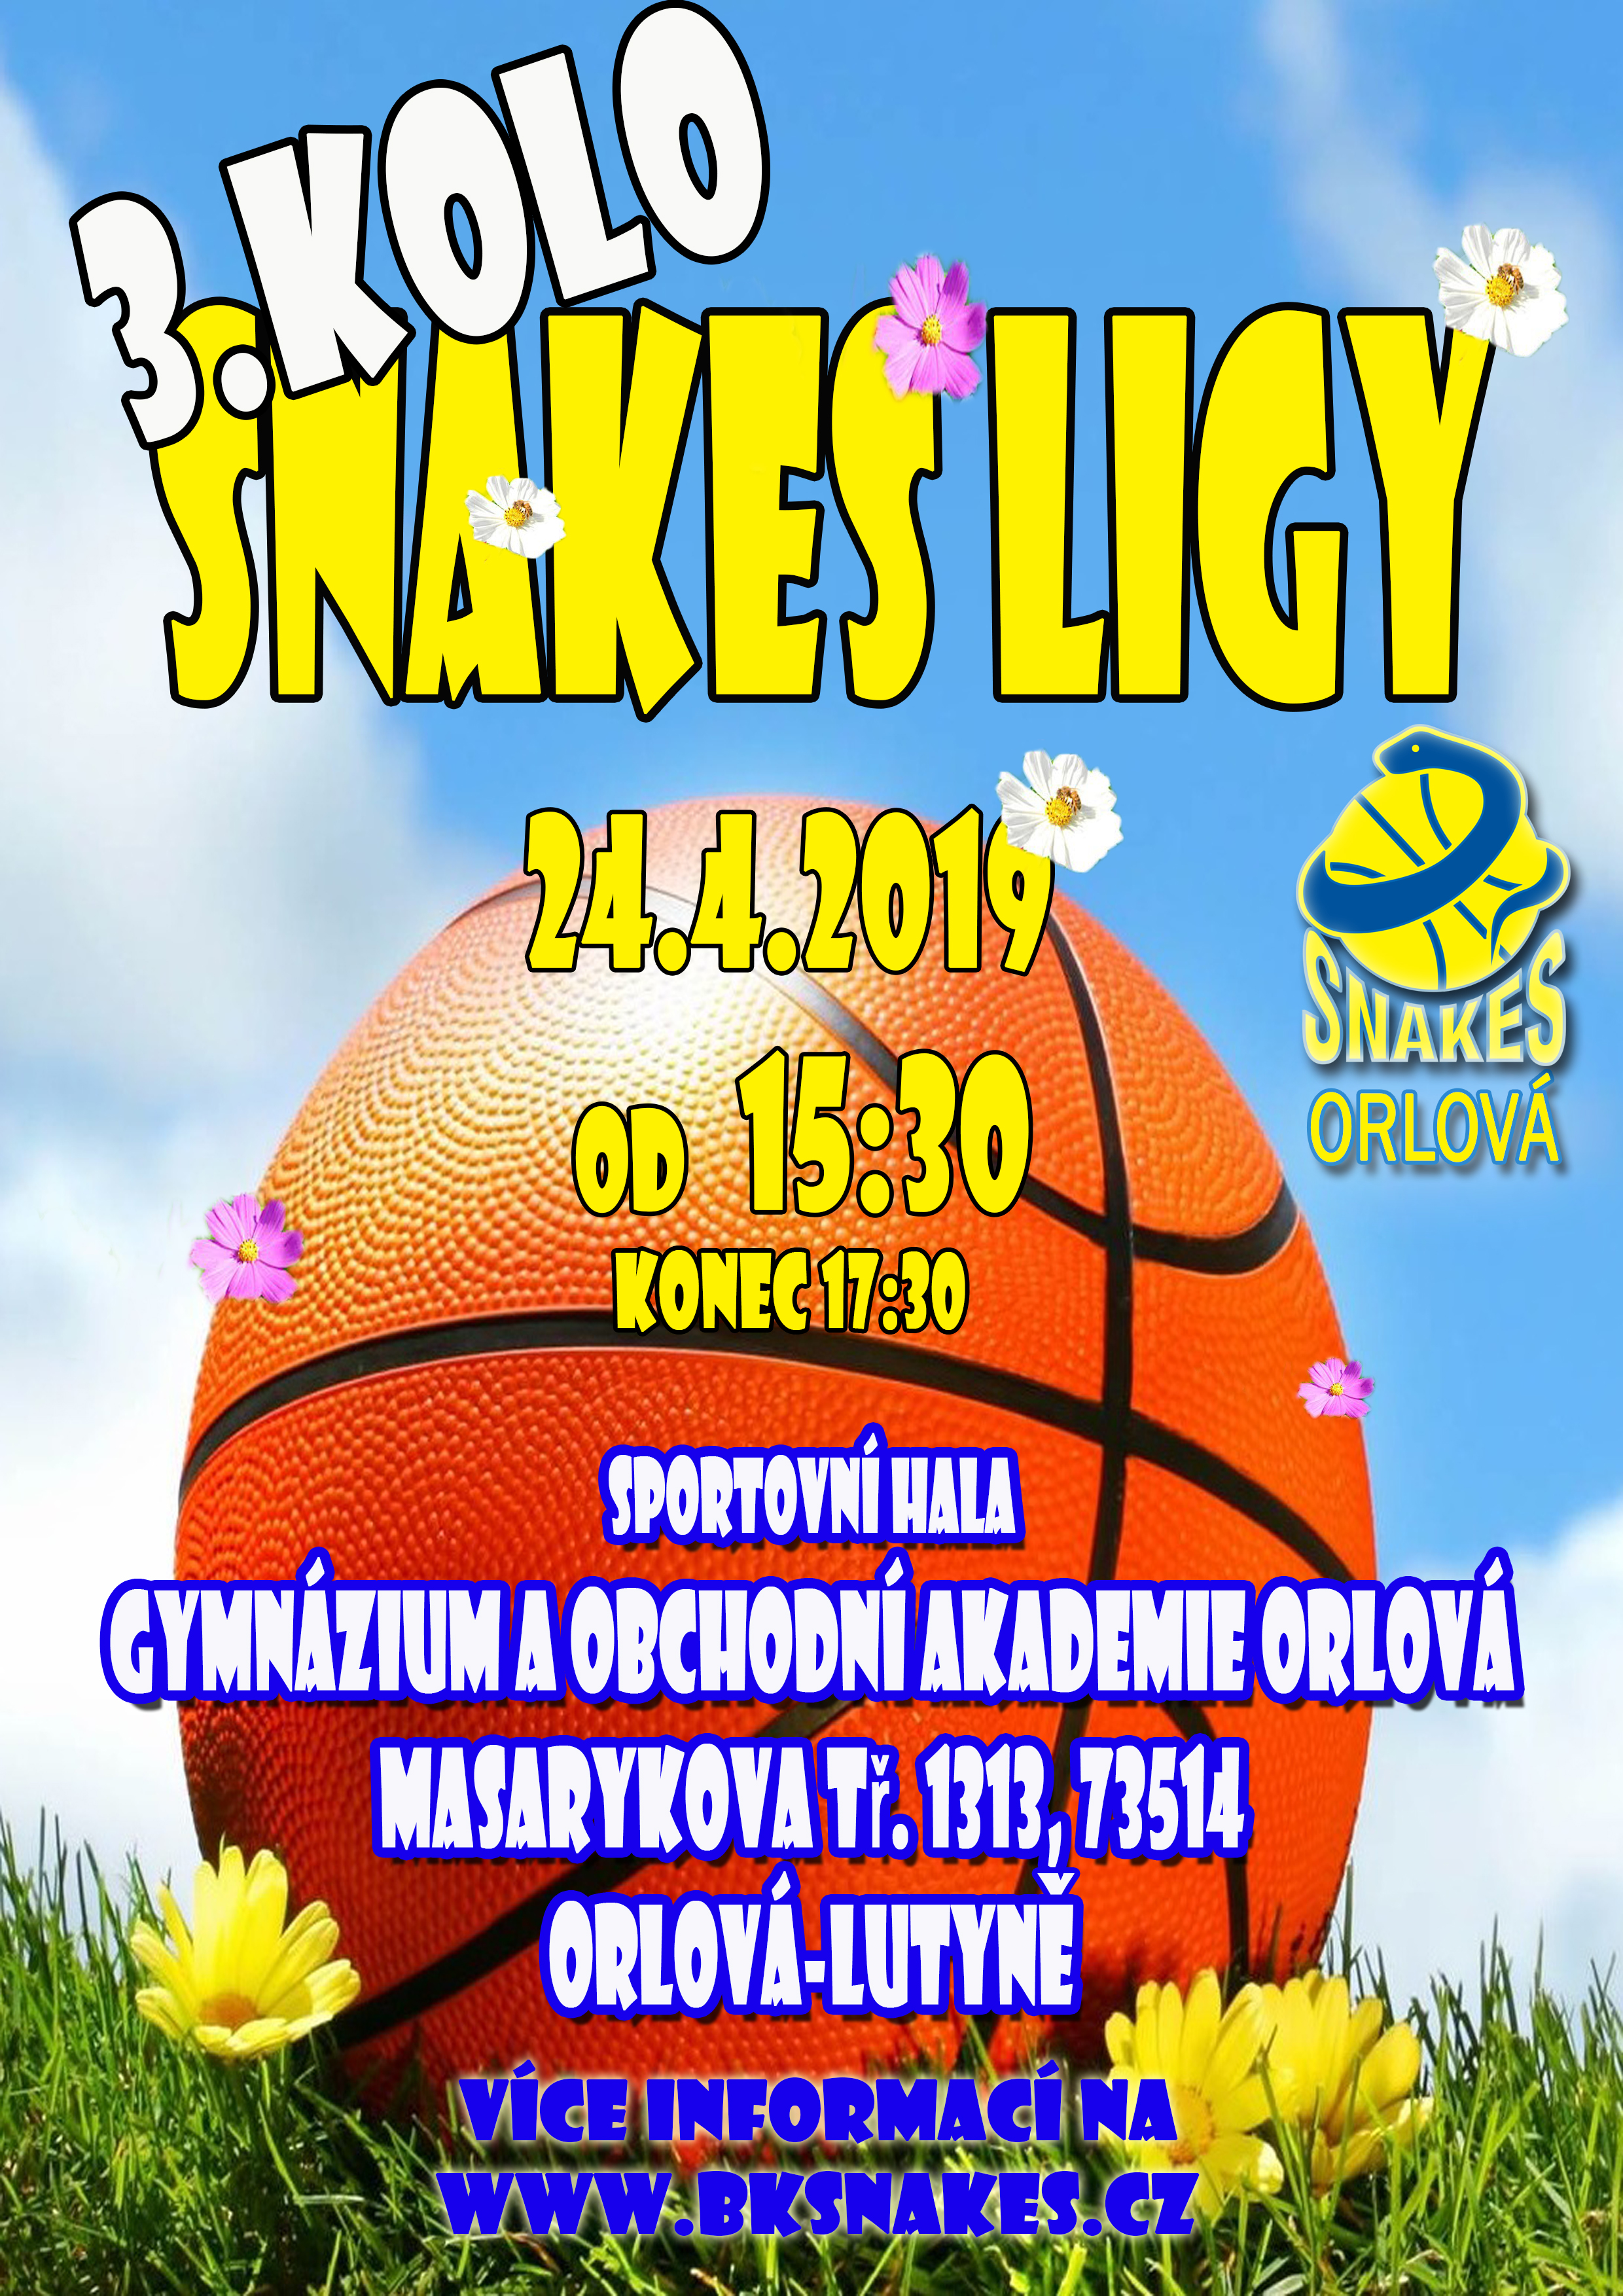 Snakes-liga-orlova-3_kolo